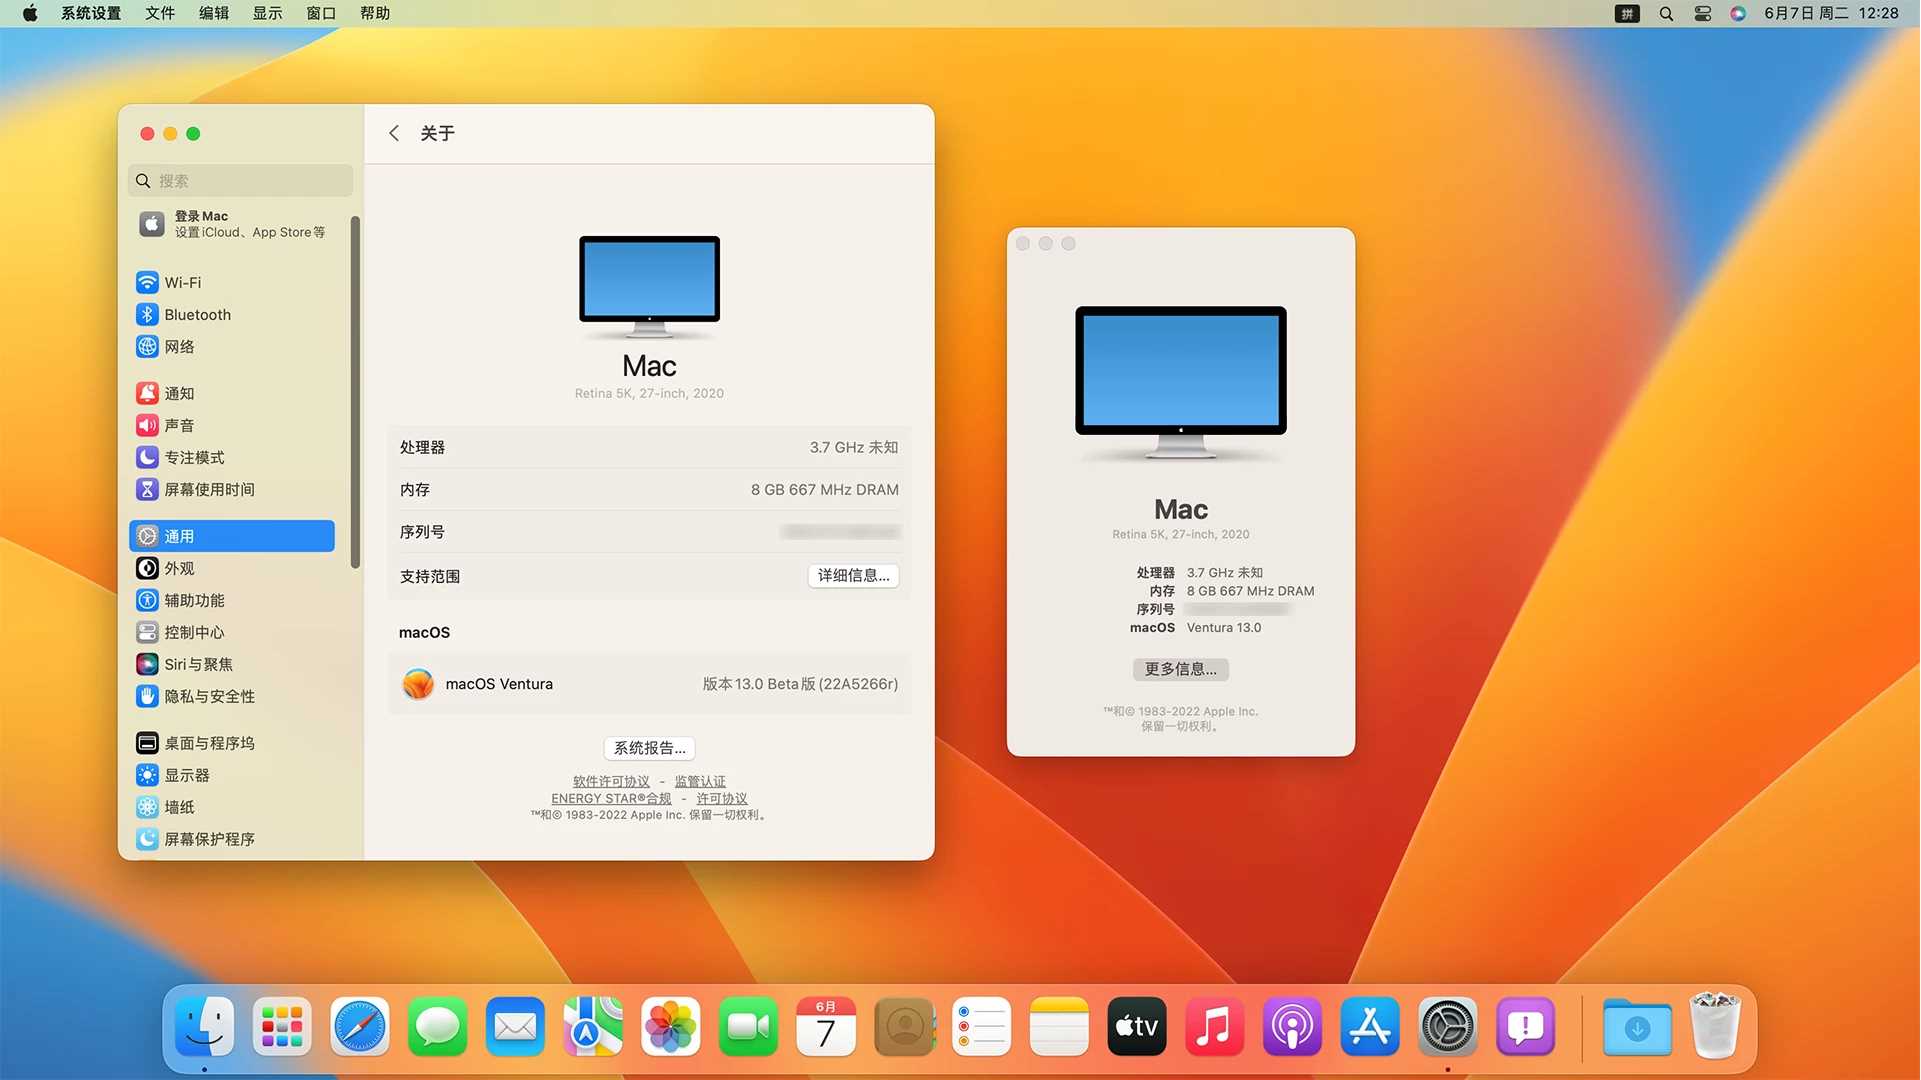 macOS13 Ventura Beta 1(22A5266r) 开